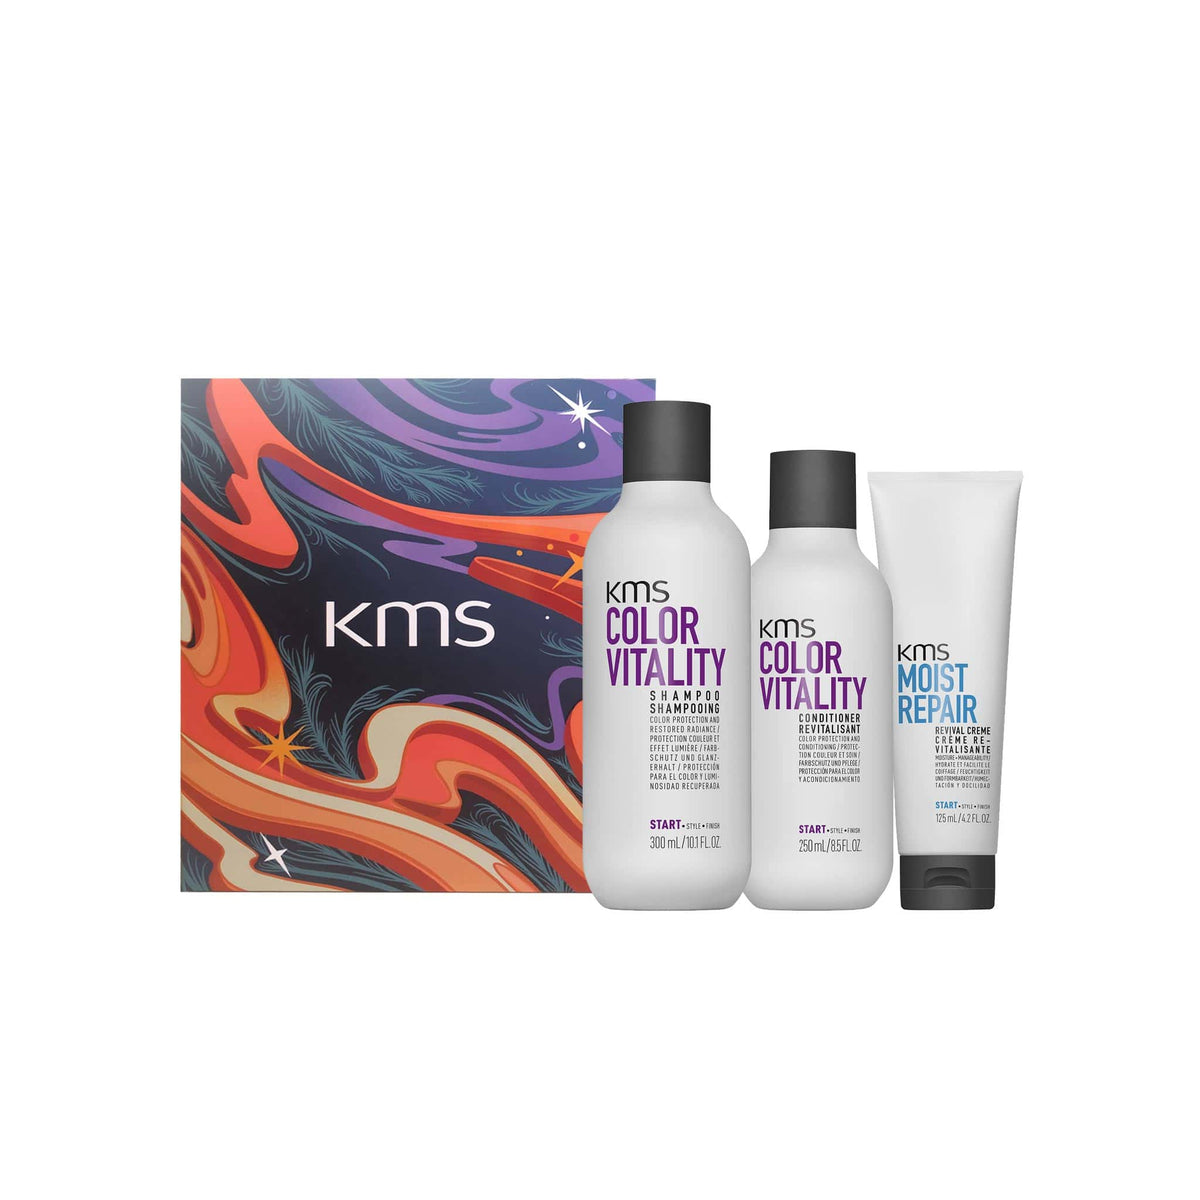 KMS Color Vitality Gift Set